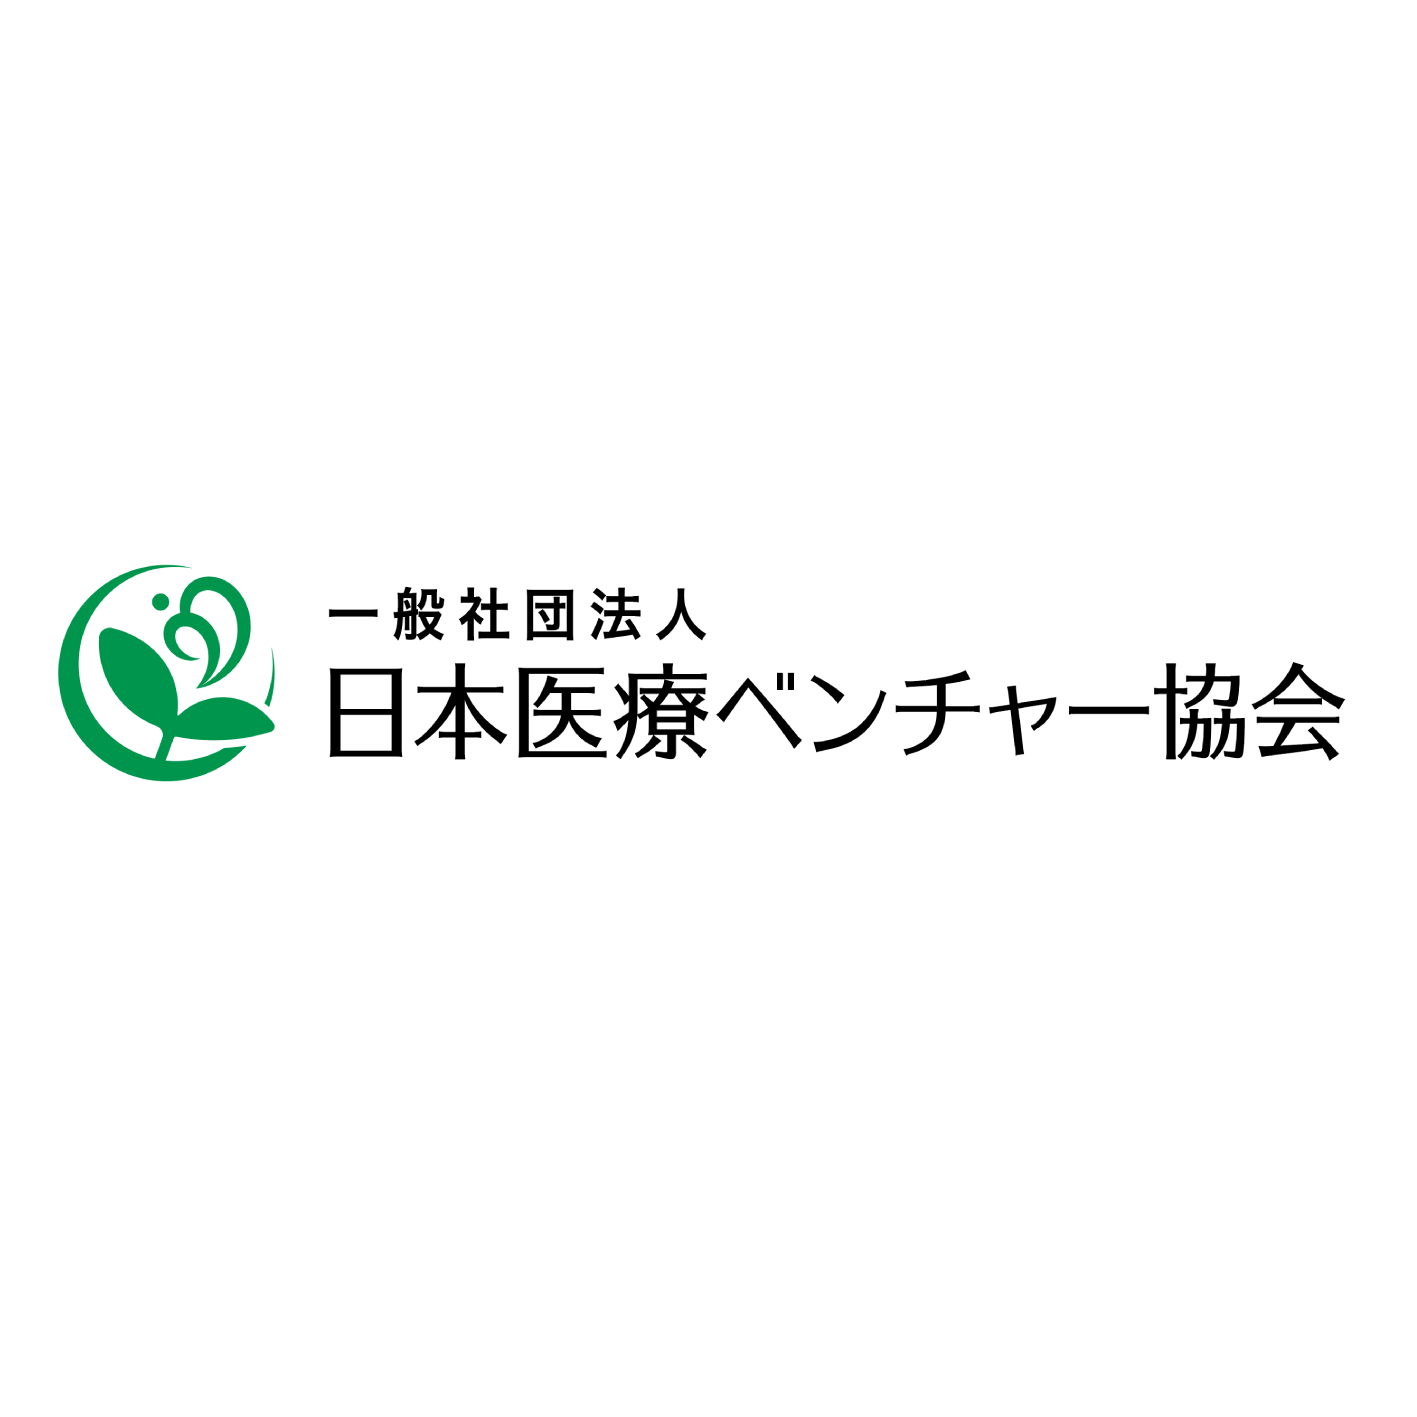 Japan Medical Venture Association